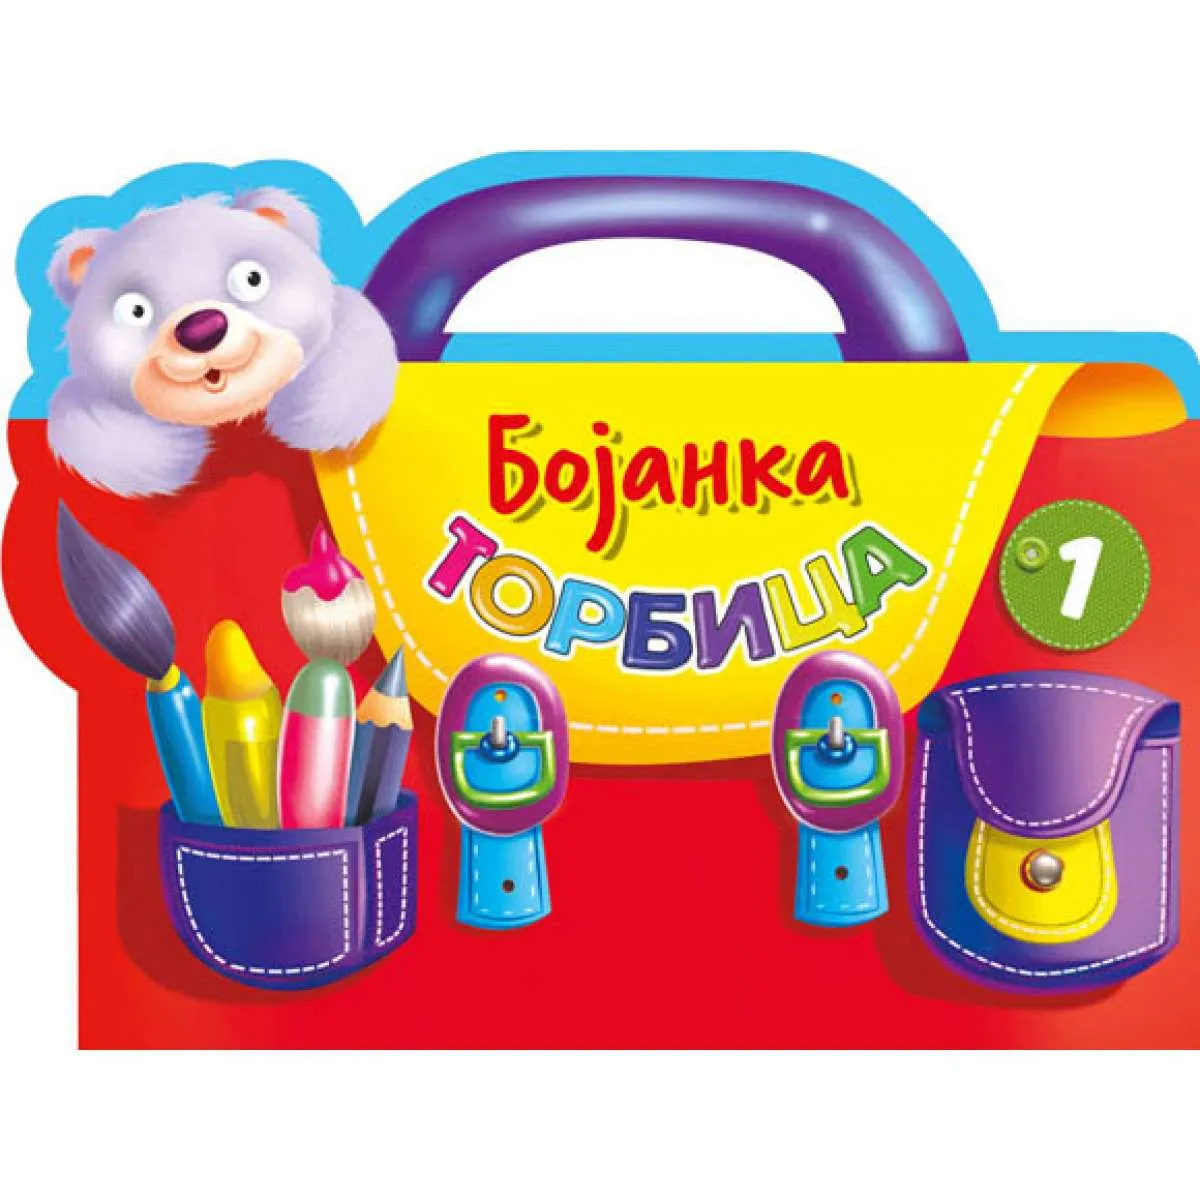 Bojanka – Torbica 1 